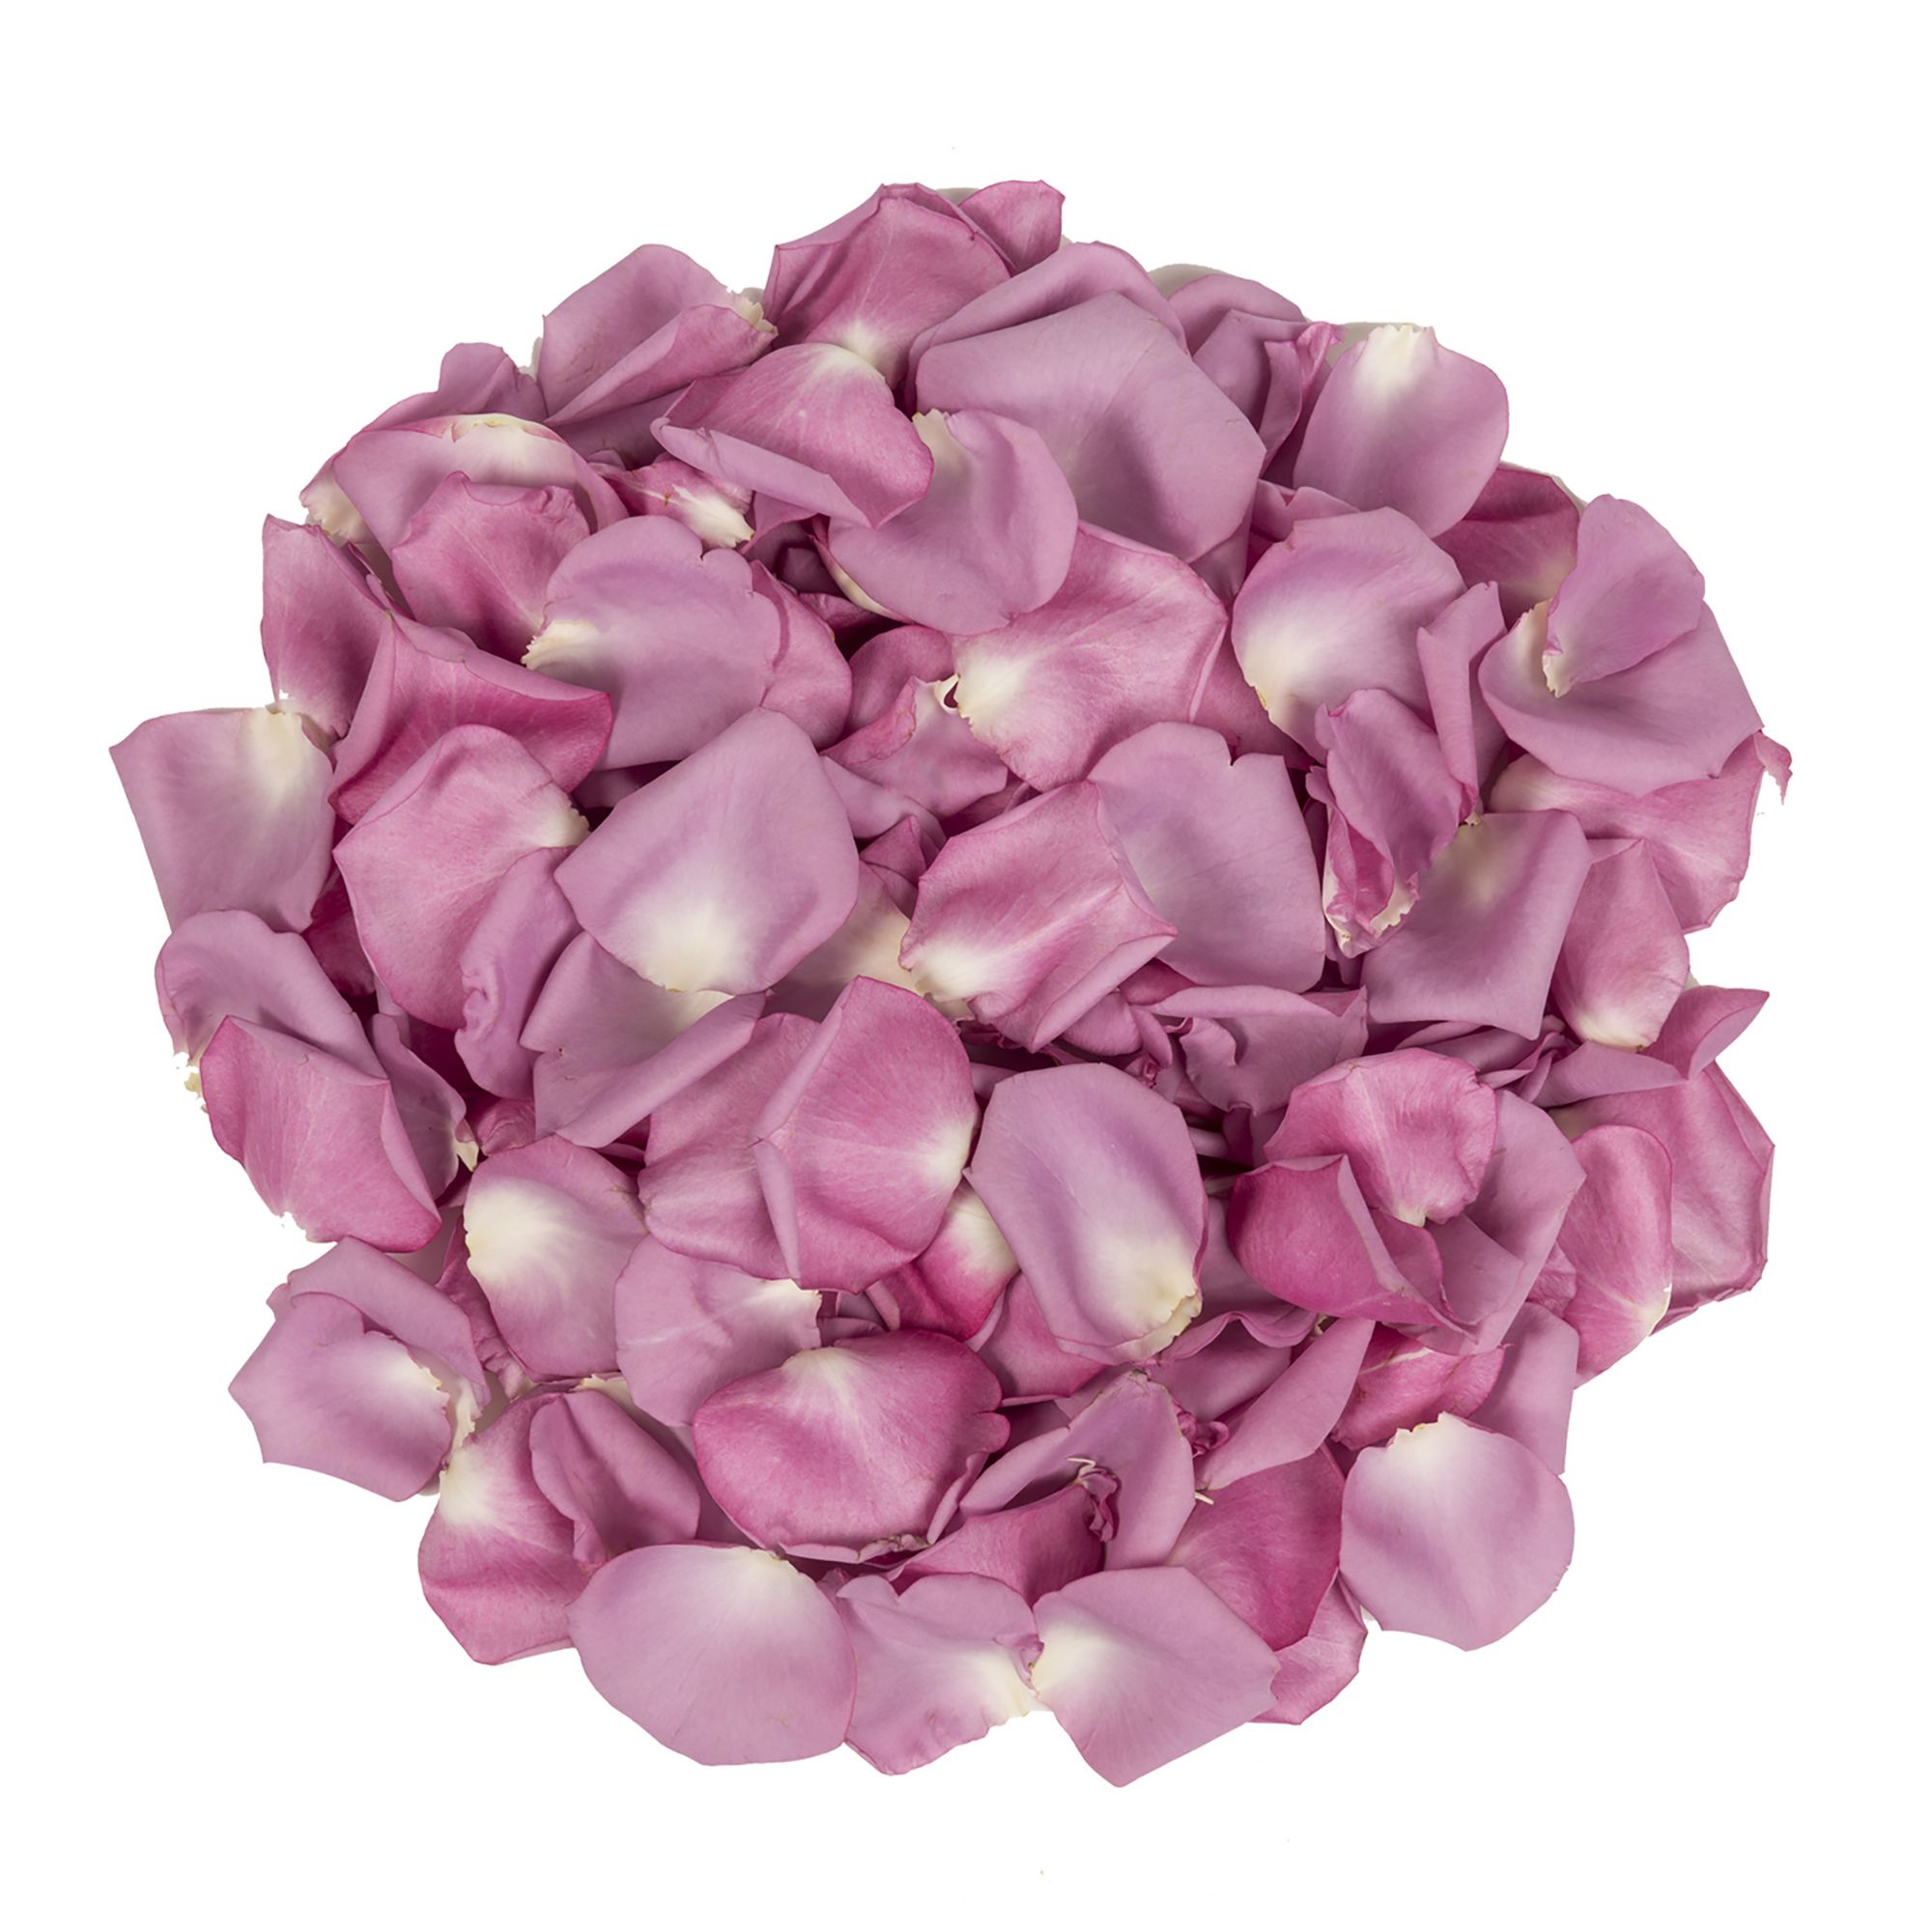 Wholesale Hot Pink Rose Petals, 3000-5000 Petals